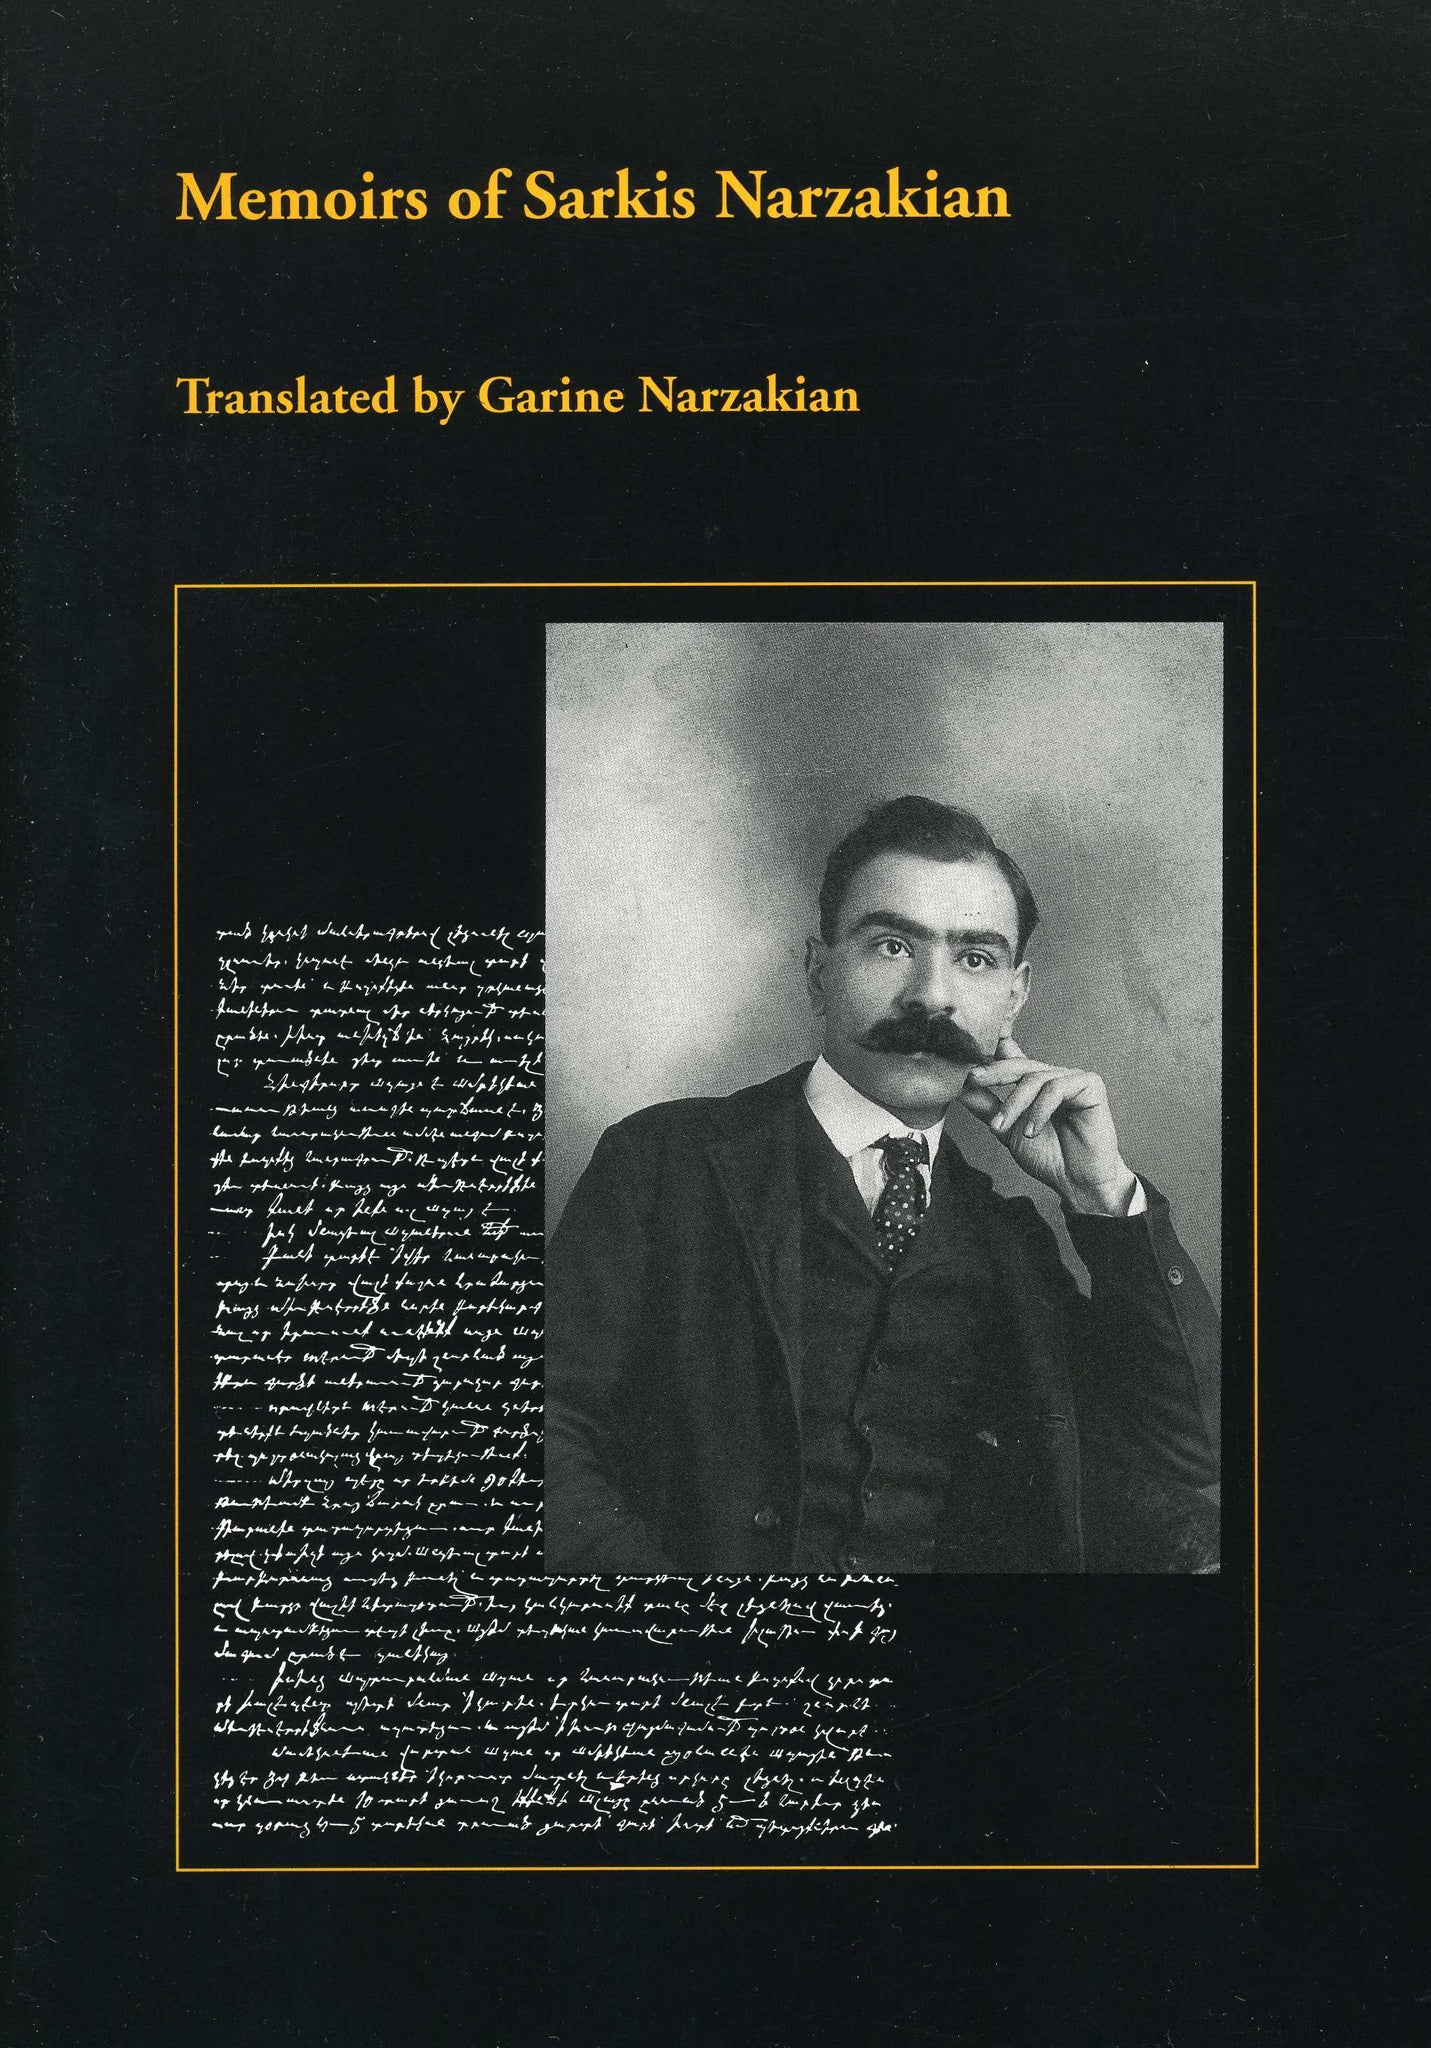 MEMOIRS OF SARKIS NARZAKIAN